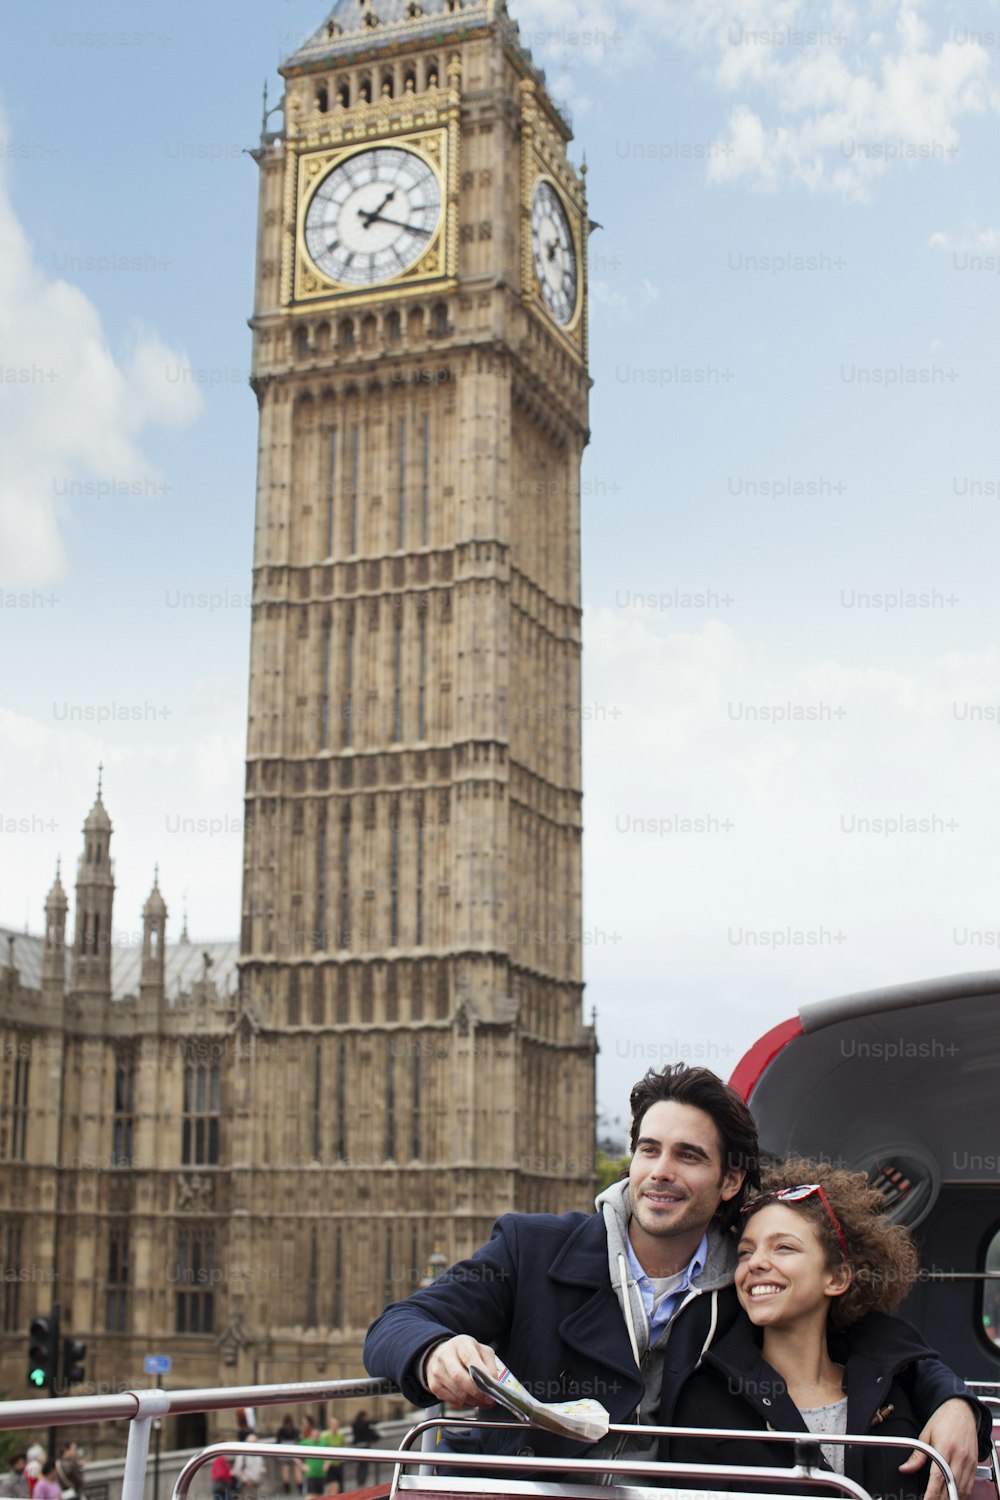 Un uomo e una donna che scattano una foto davanti alla torre dell'orologio del Big Ben